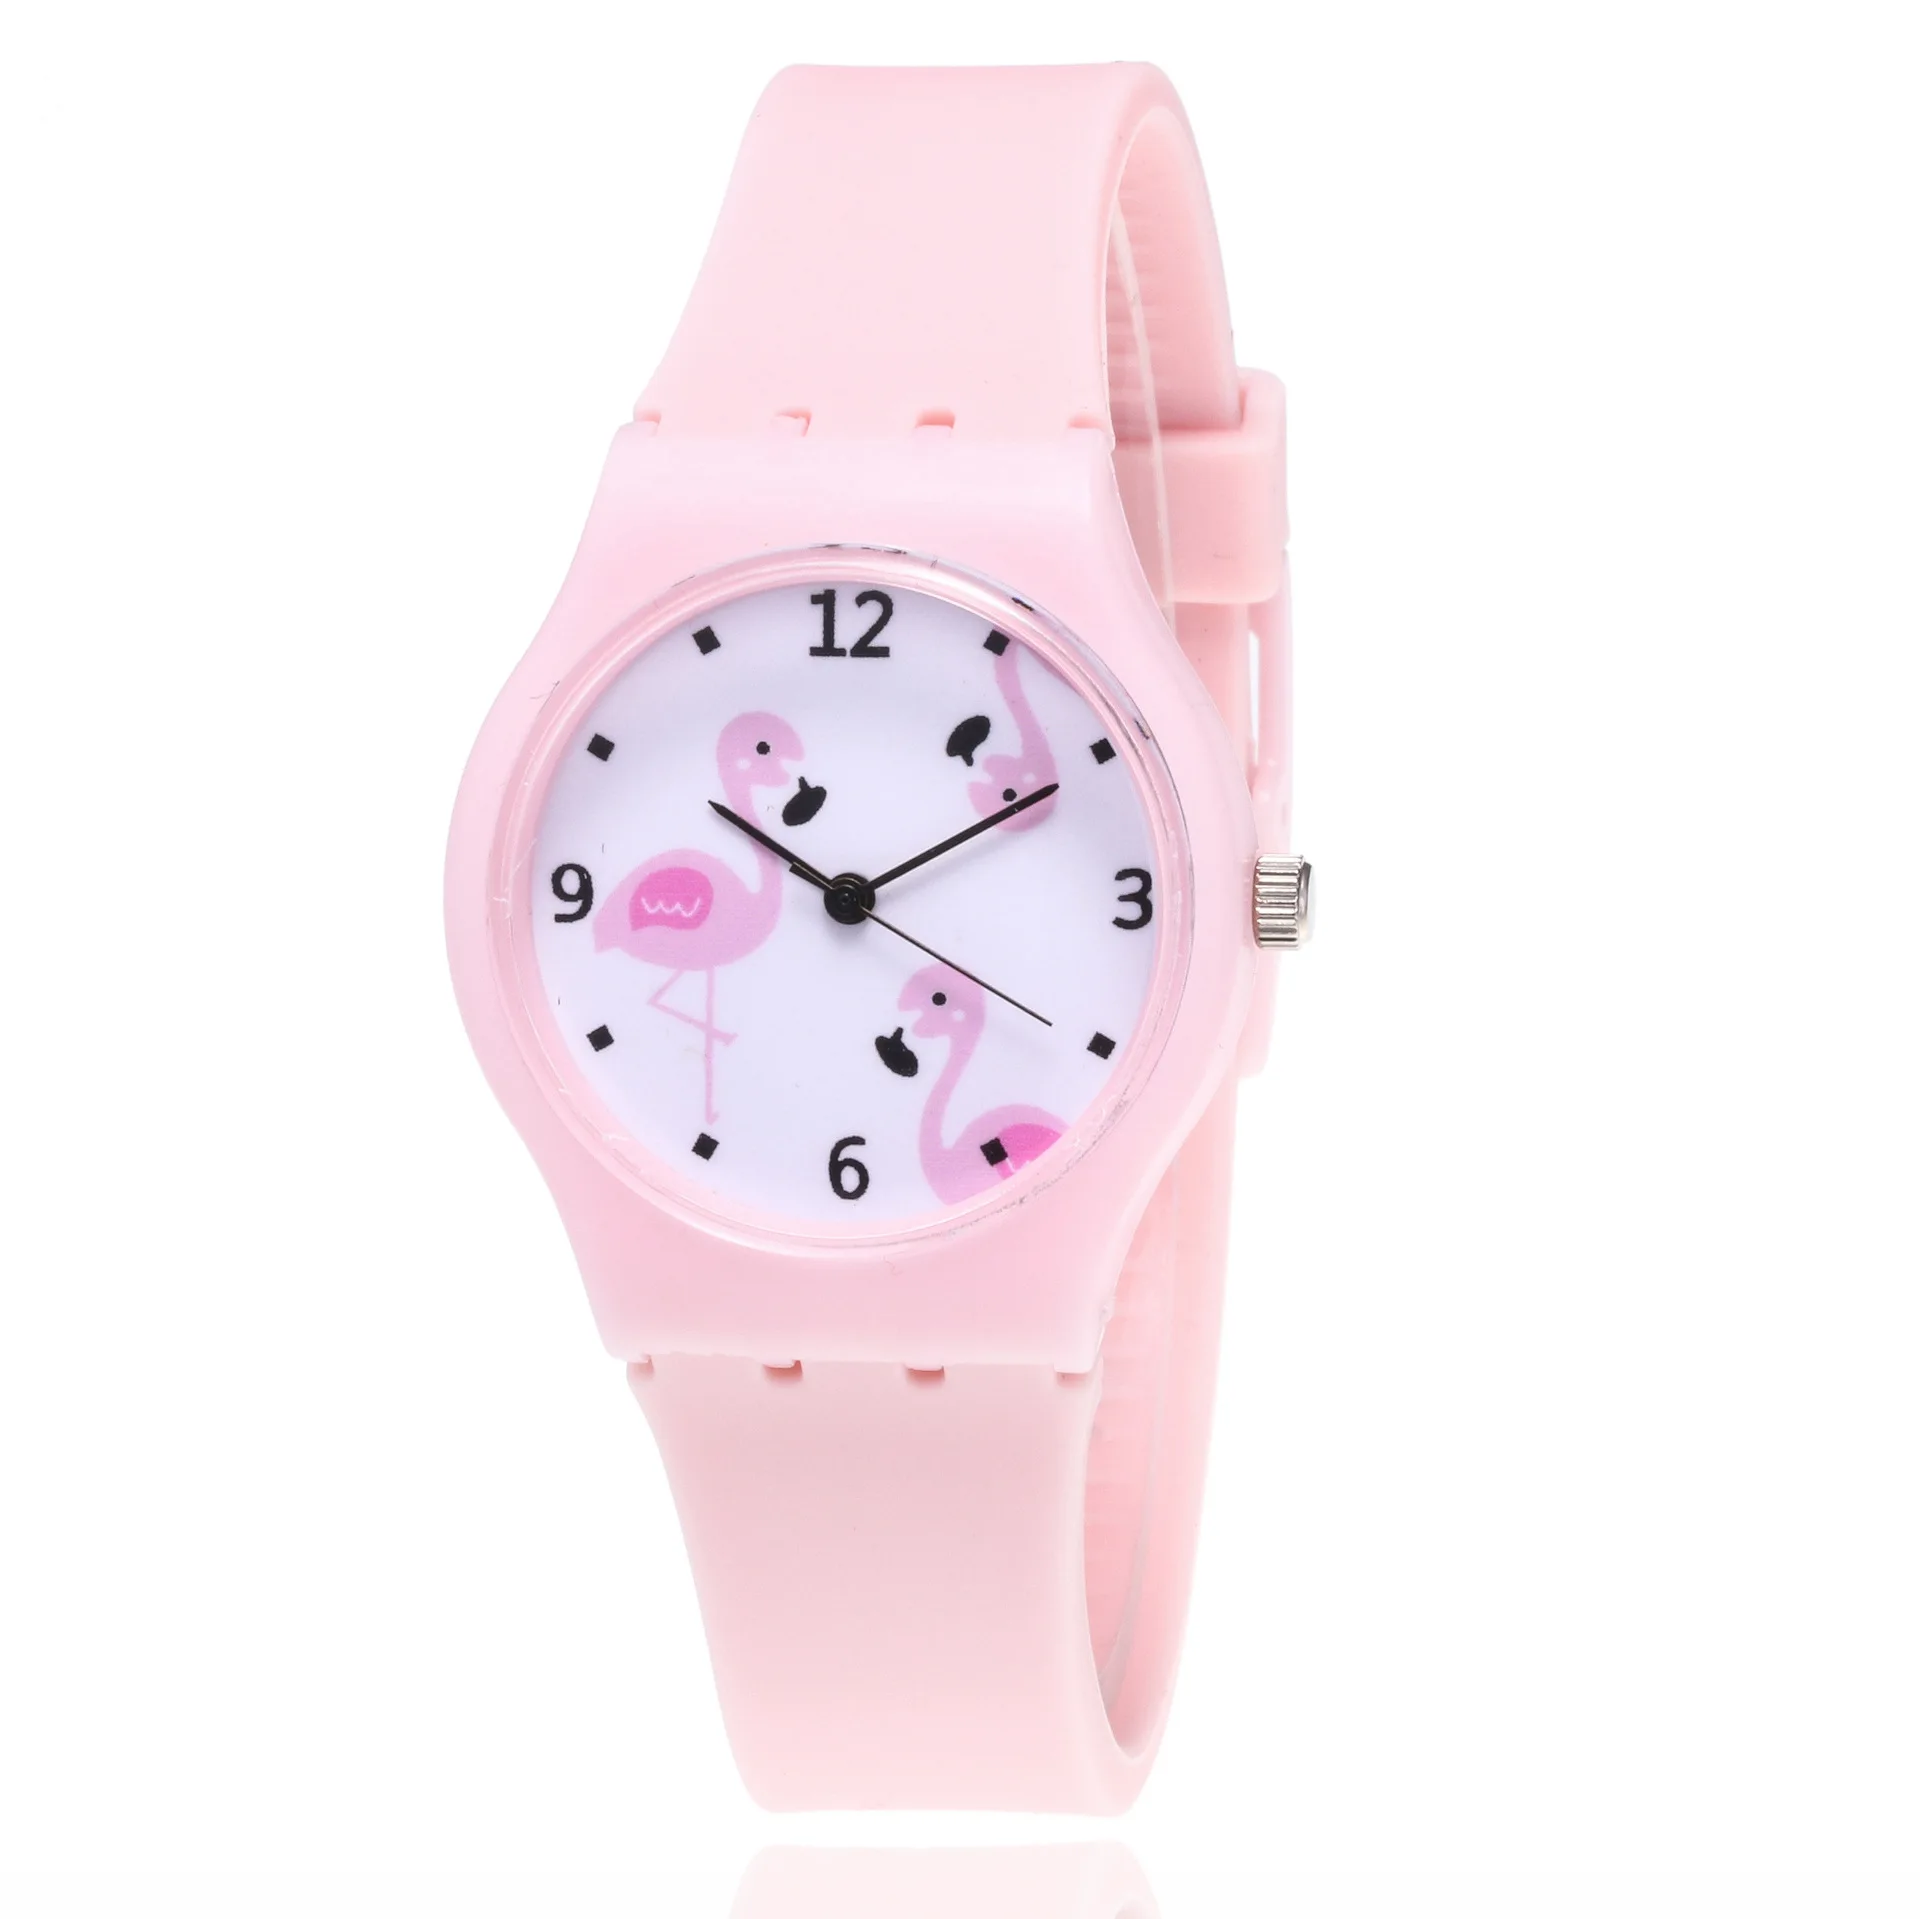 Новинка 2019 года, Модные Силиконовые кварцевые часы с фламинго для детей, студентов и девочек